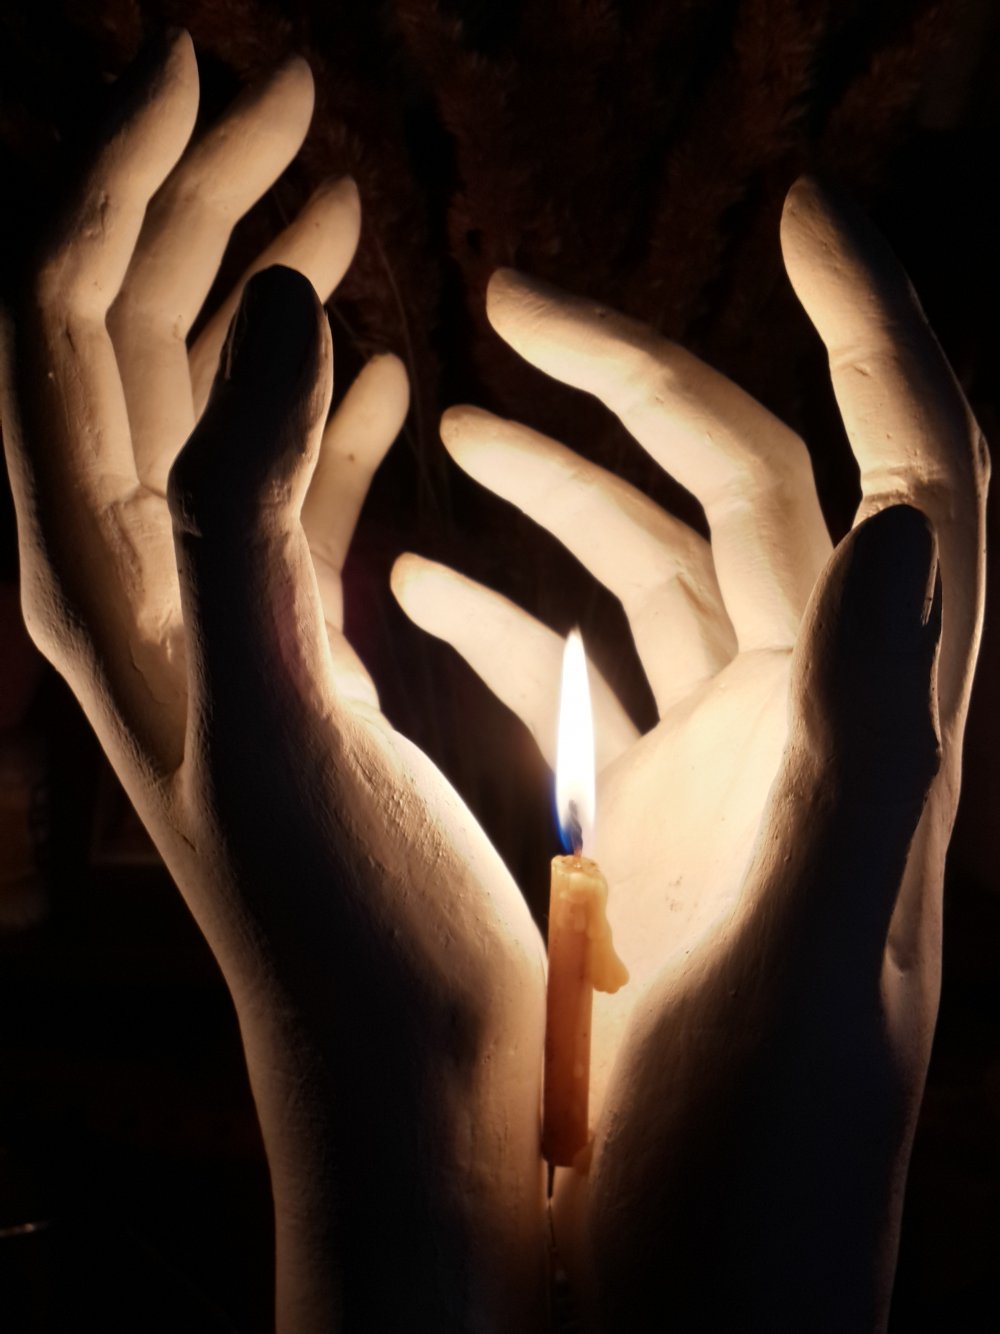 Горящая свеча в руках